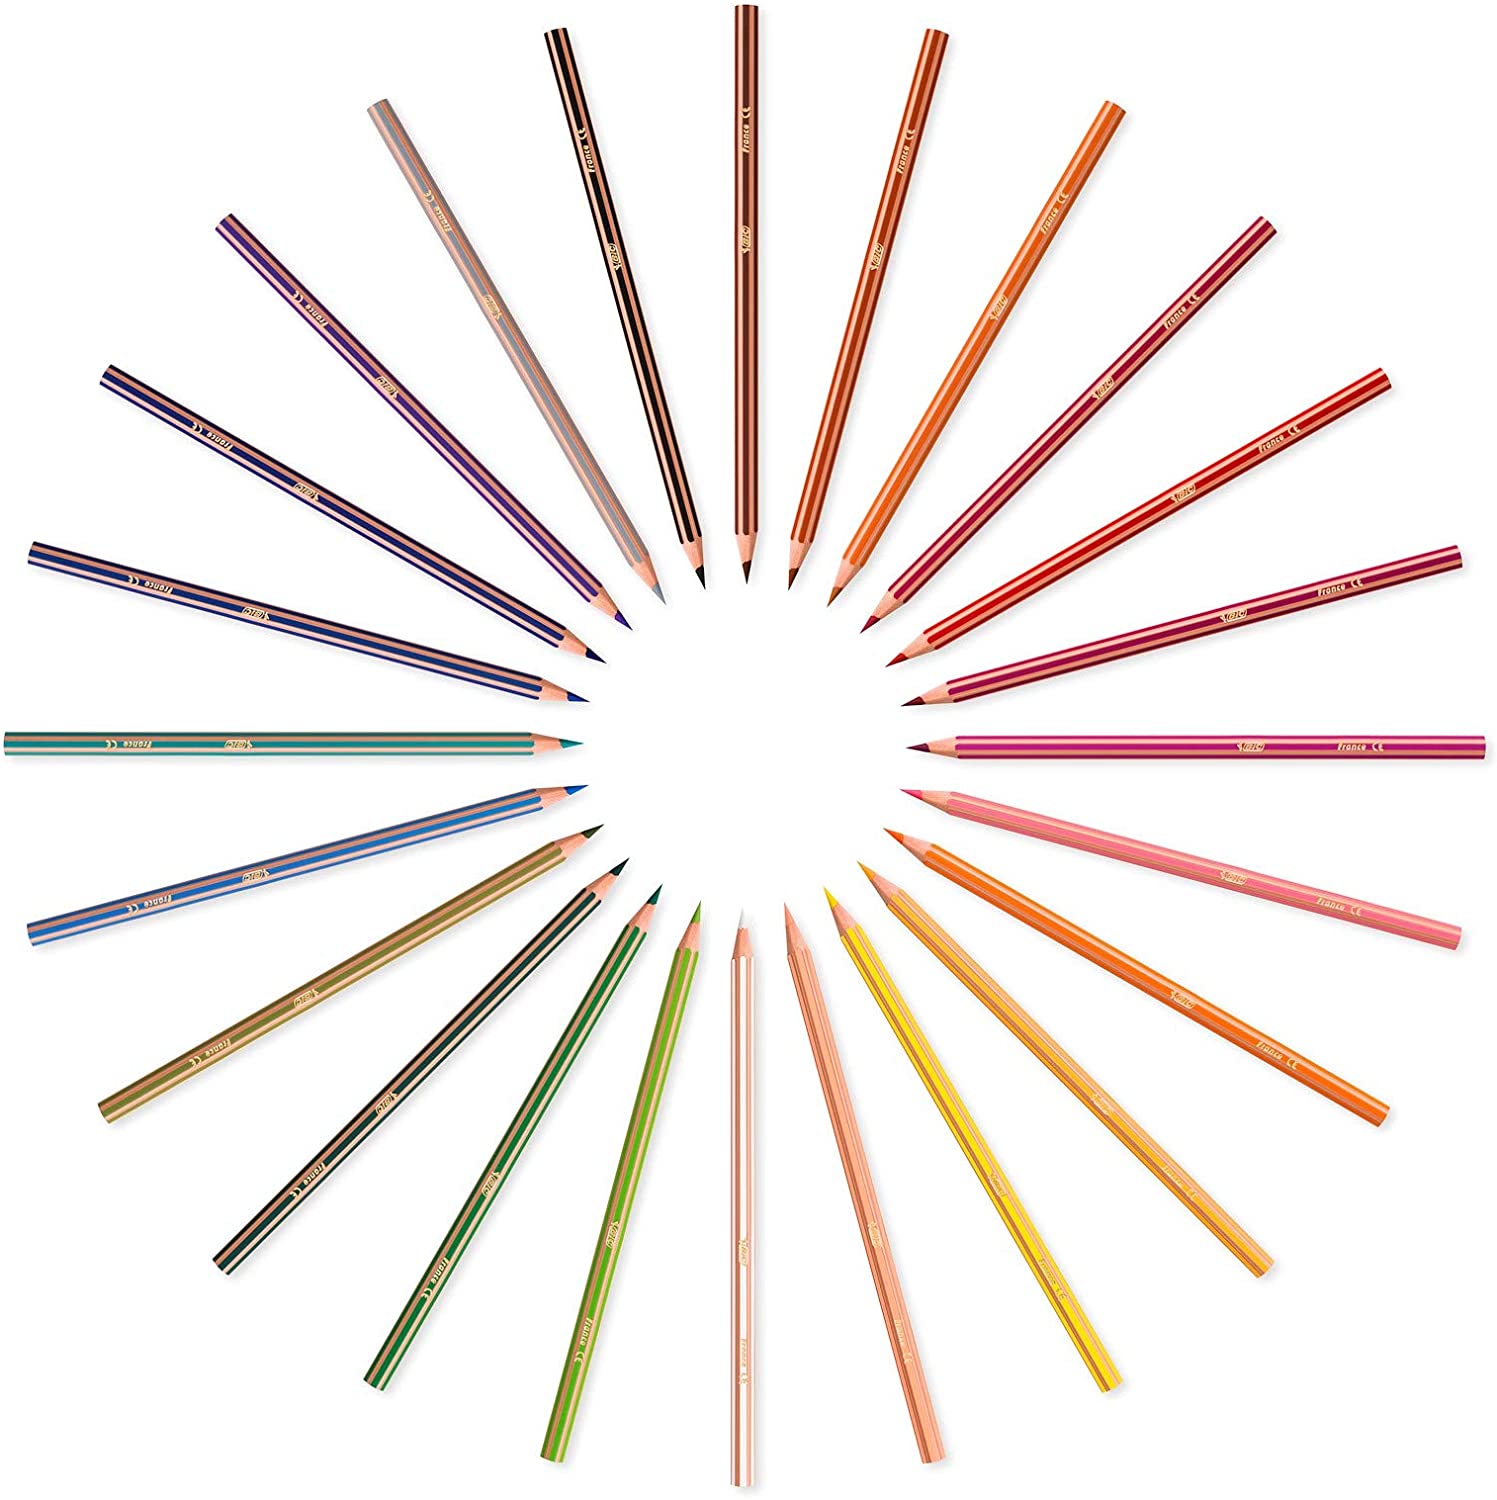 Kids Evolution Stripes Coloring Pencils - 12 Pack